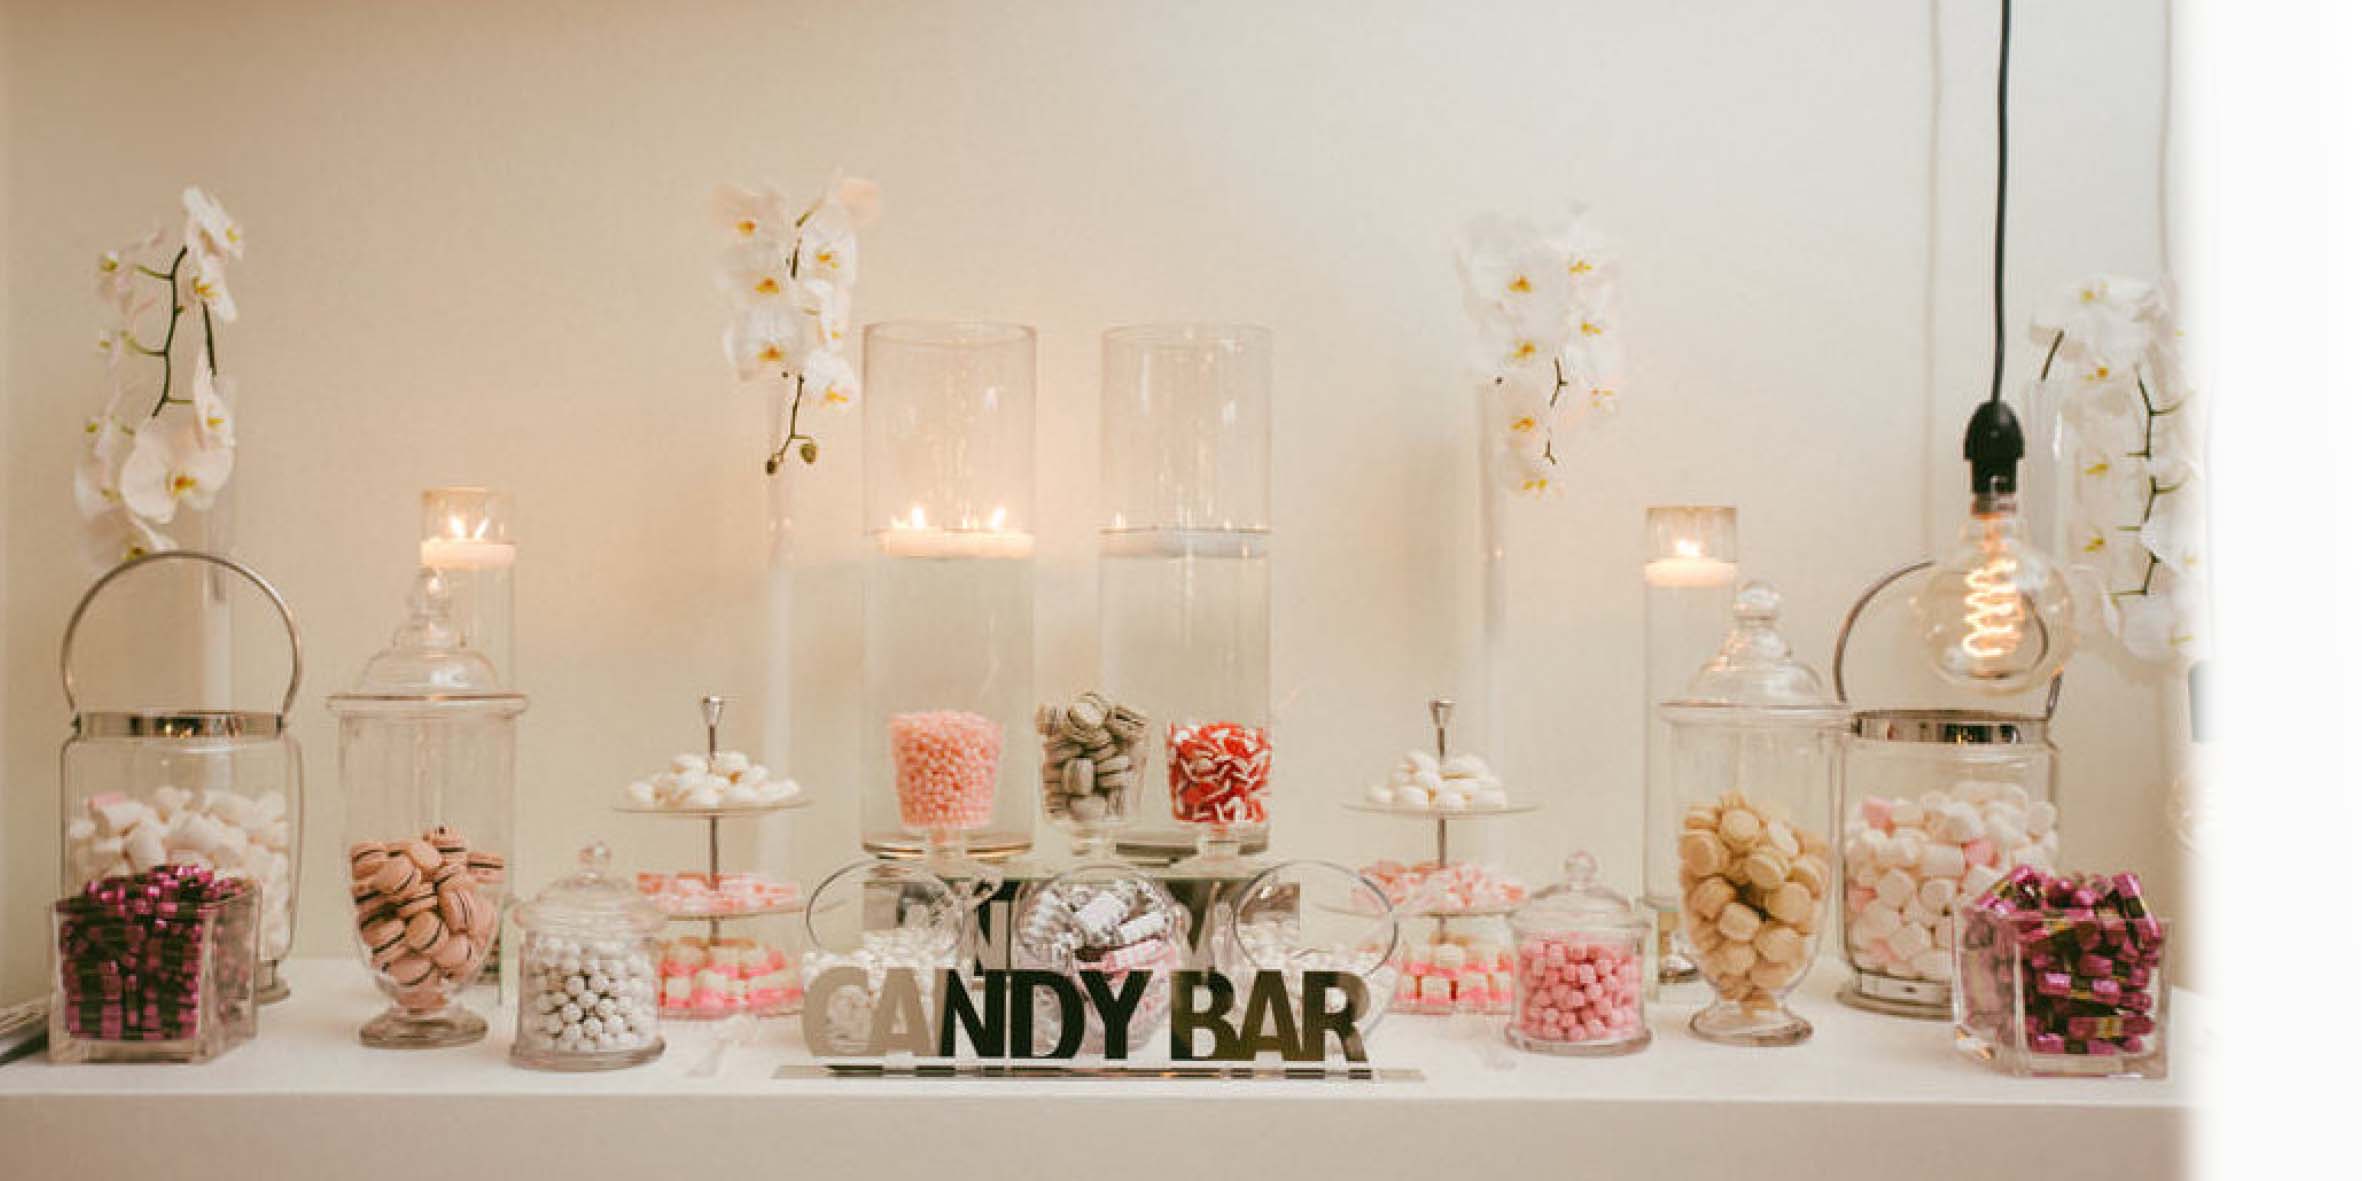 Le Candy Bar, juste une tendance ou une vraie bonne idée ?